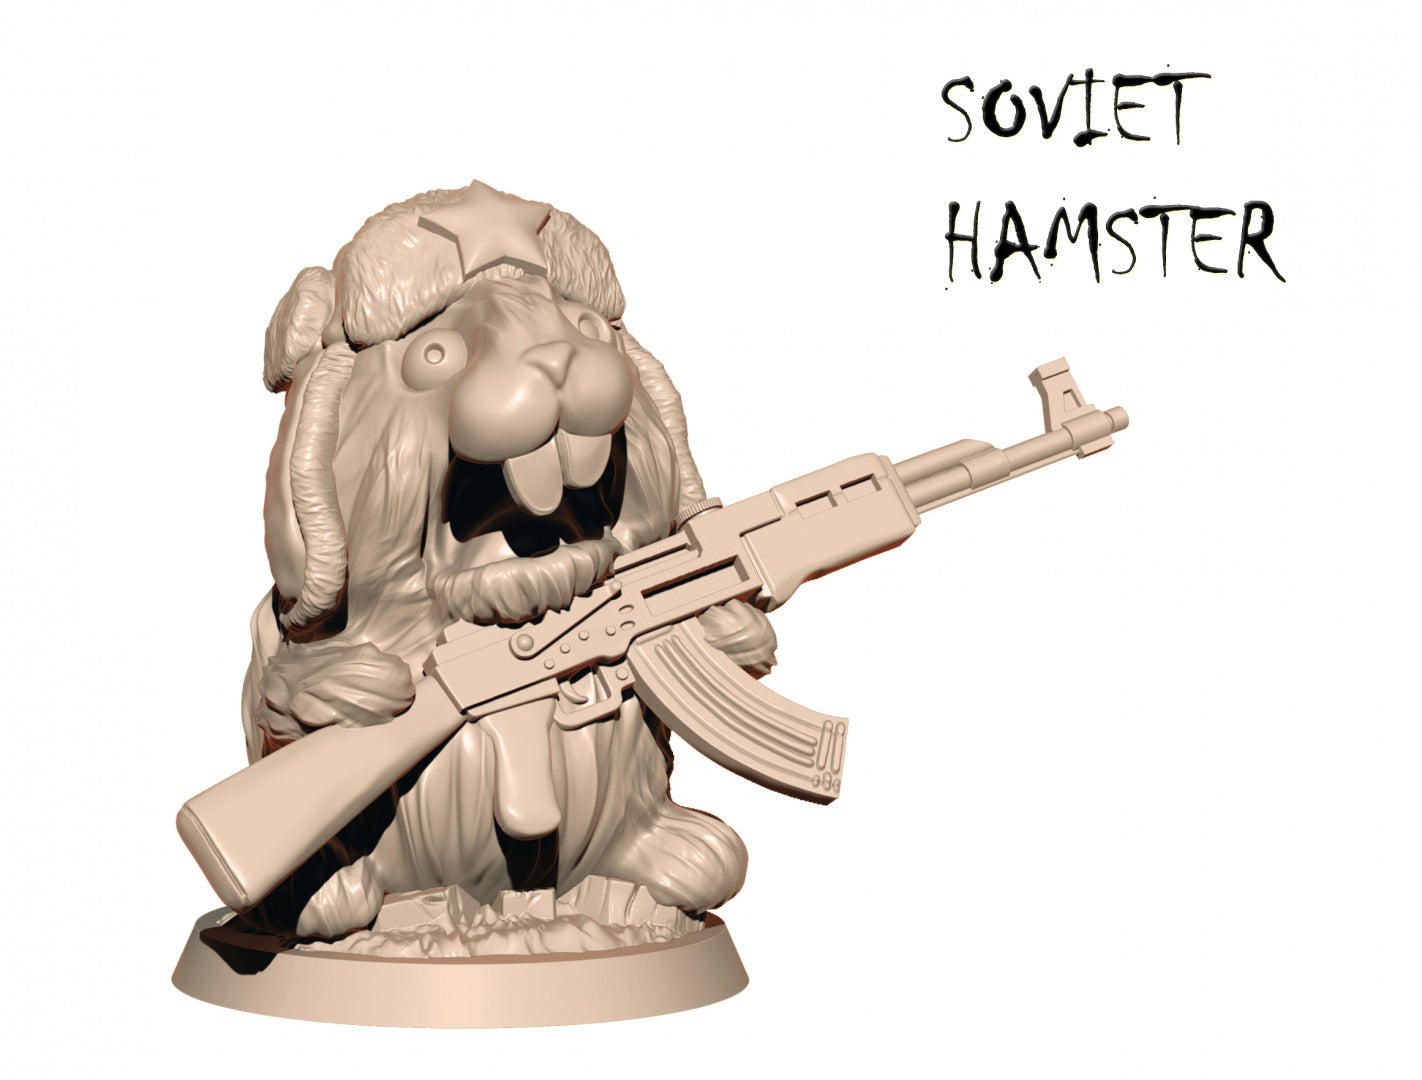 Soviet Hamster